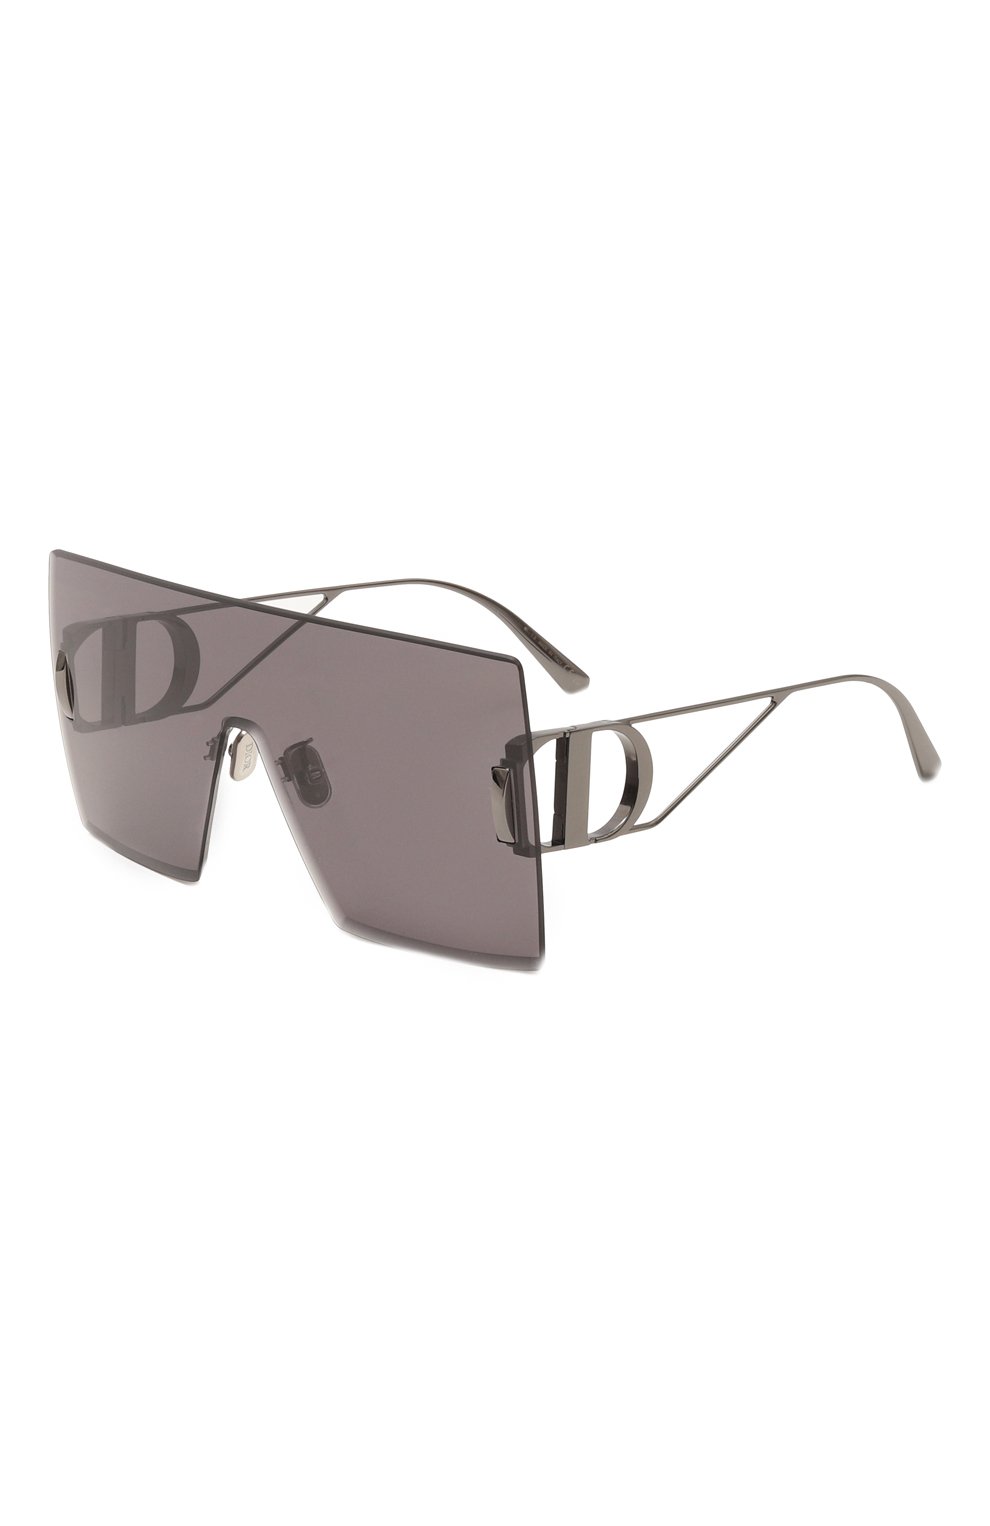 Очки Dior Eyewear, Солнцезащитные очки Dior Eyewear, Италия, Чёрный, Оправа-металл; Линзы-поликарбонат;, 13373419  - купить